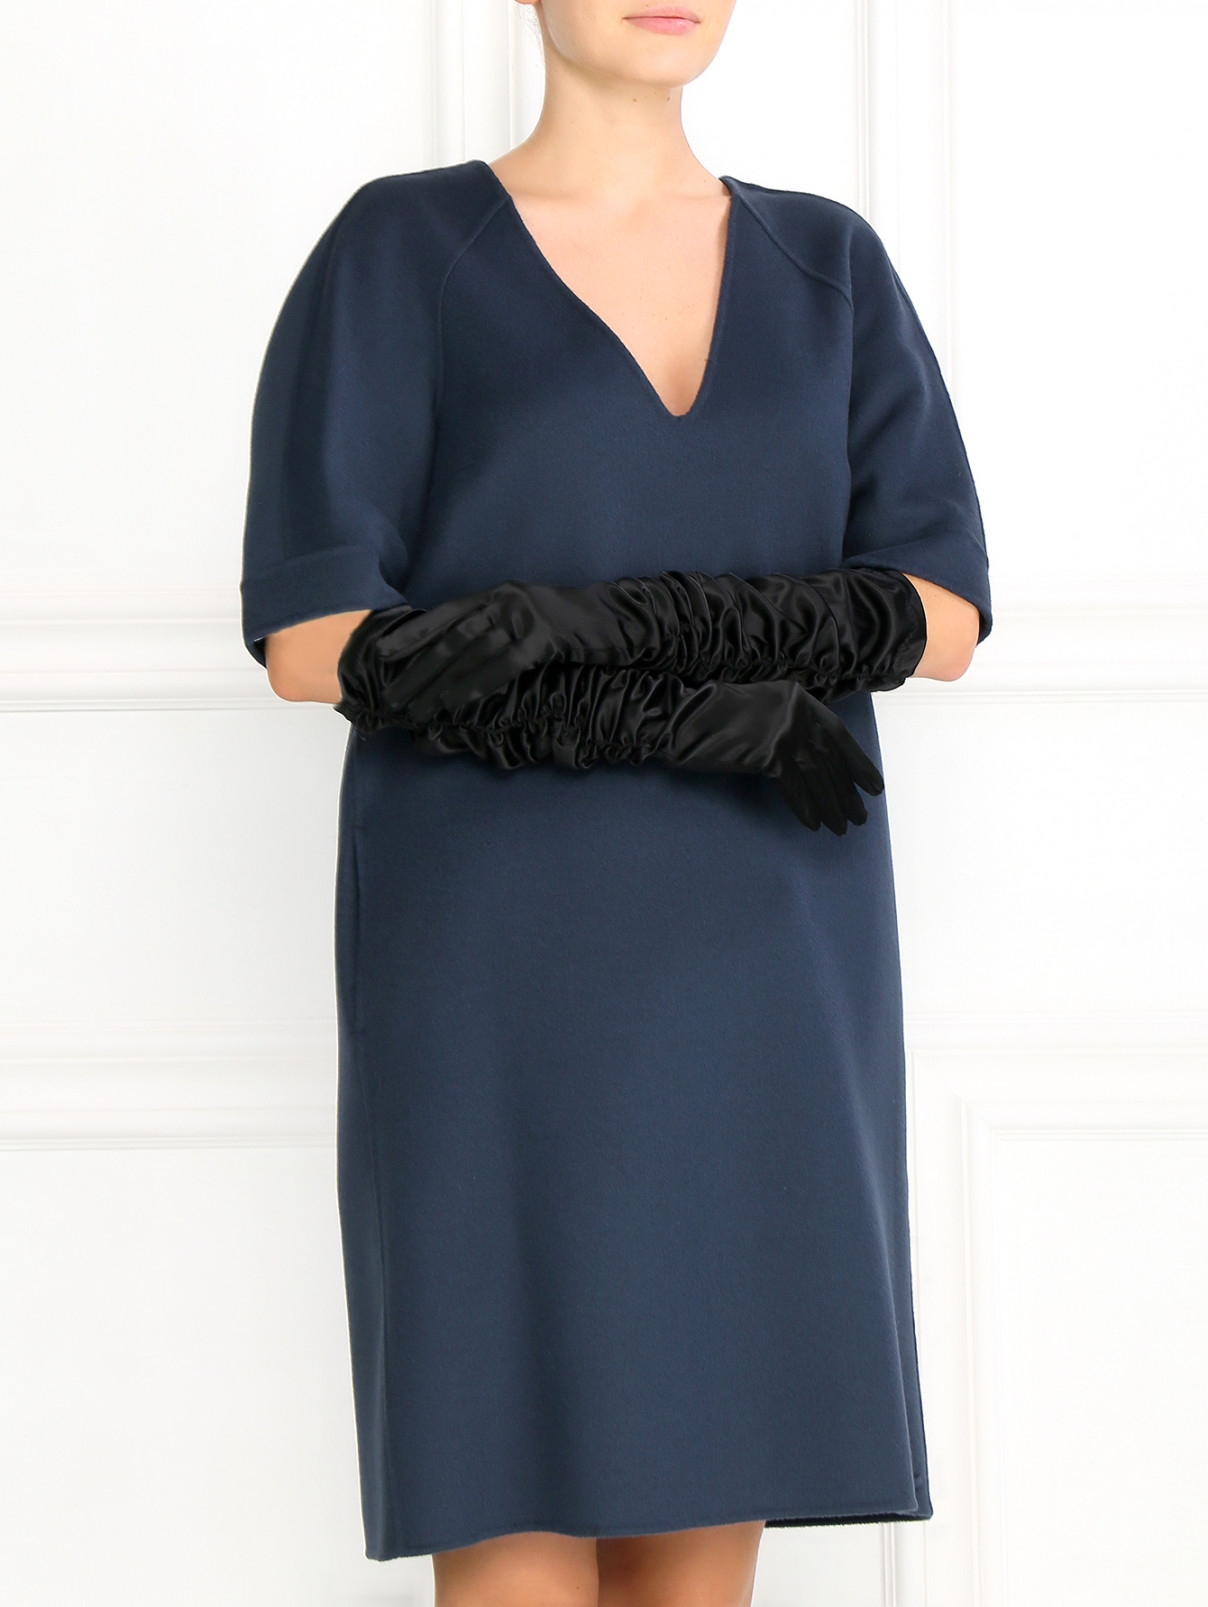 Длинные перчатки с драпировкой Marina Rinaldi  –  Модель Общий вид  – Цвет:  Черный